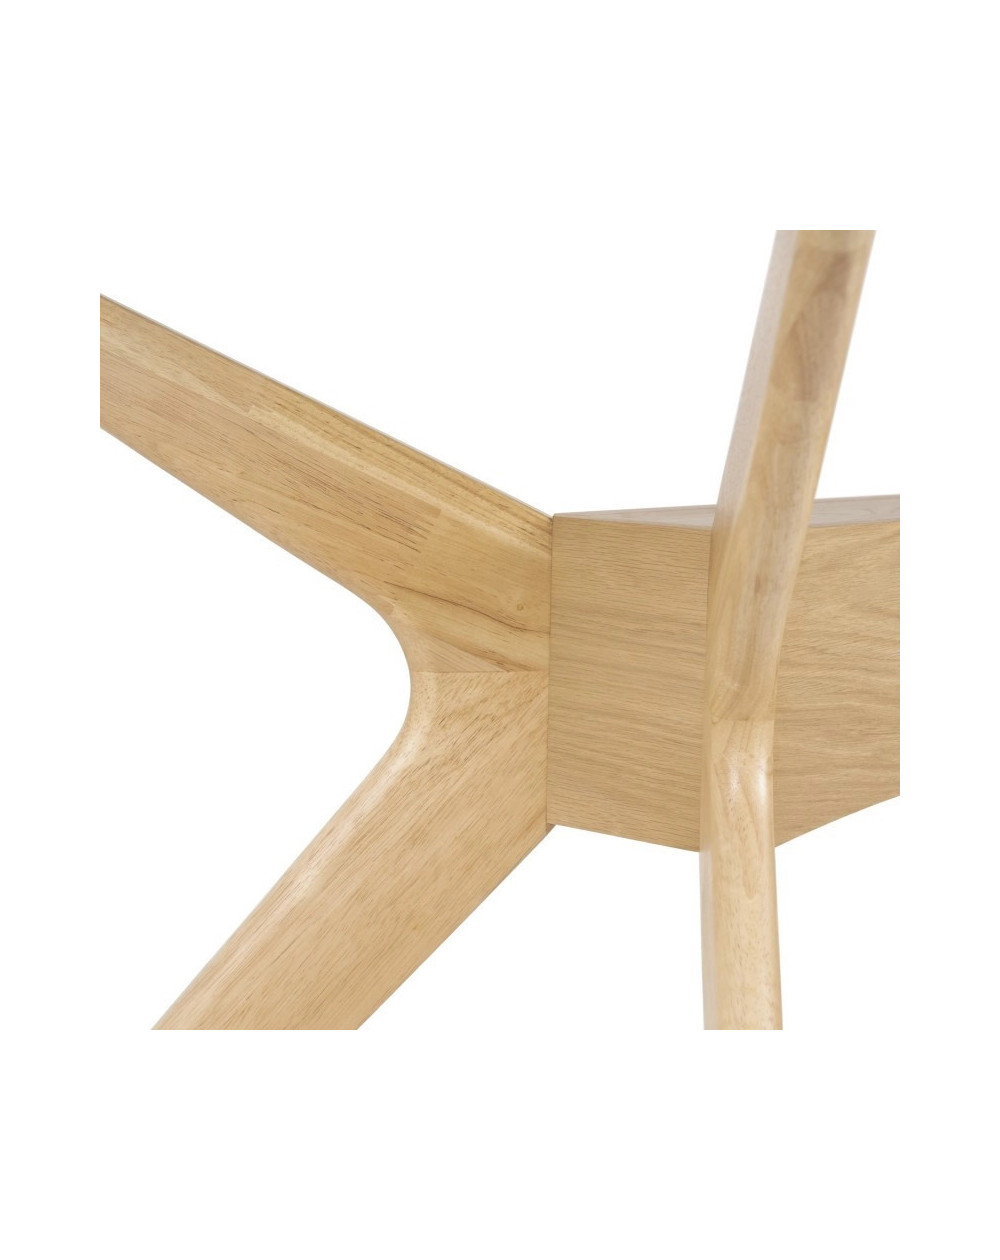 Cadeira Account DUDECO - Material do assento: Tecido (poliéster respirável)
Material de estrutura: Espuma (densidade 50 kg / m3